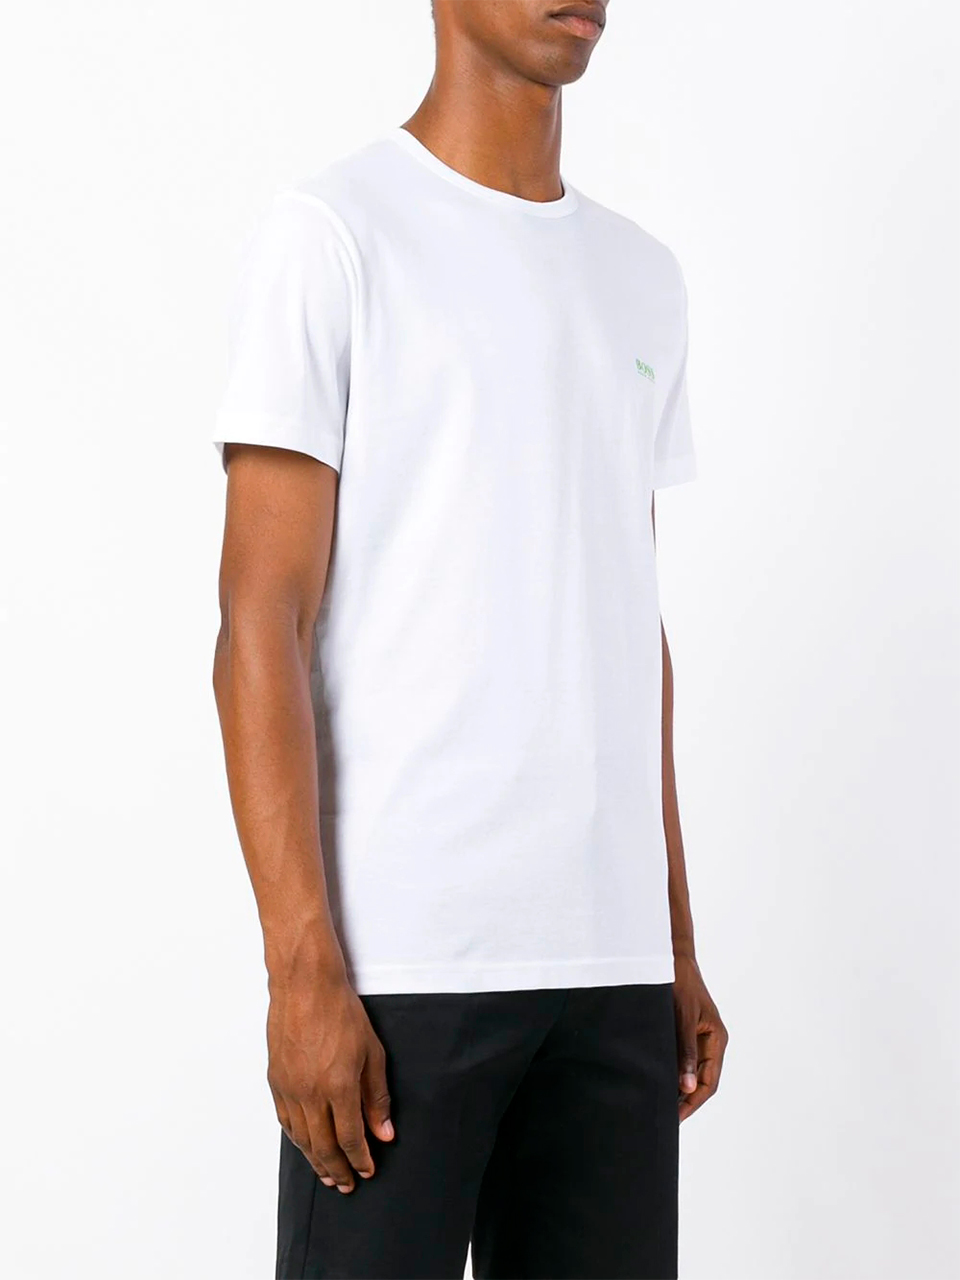 Imagem de: Camiseta BOSS Branca com Logo Verde